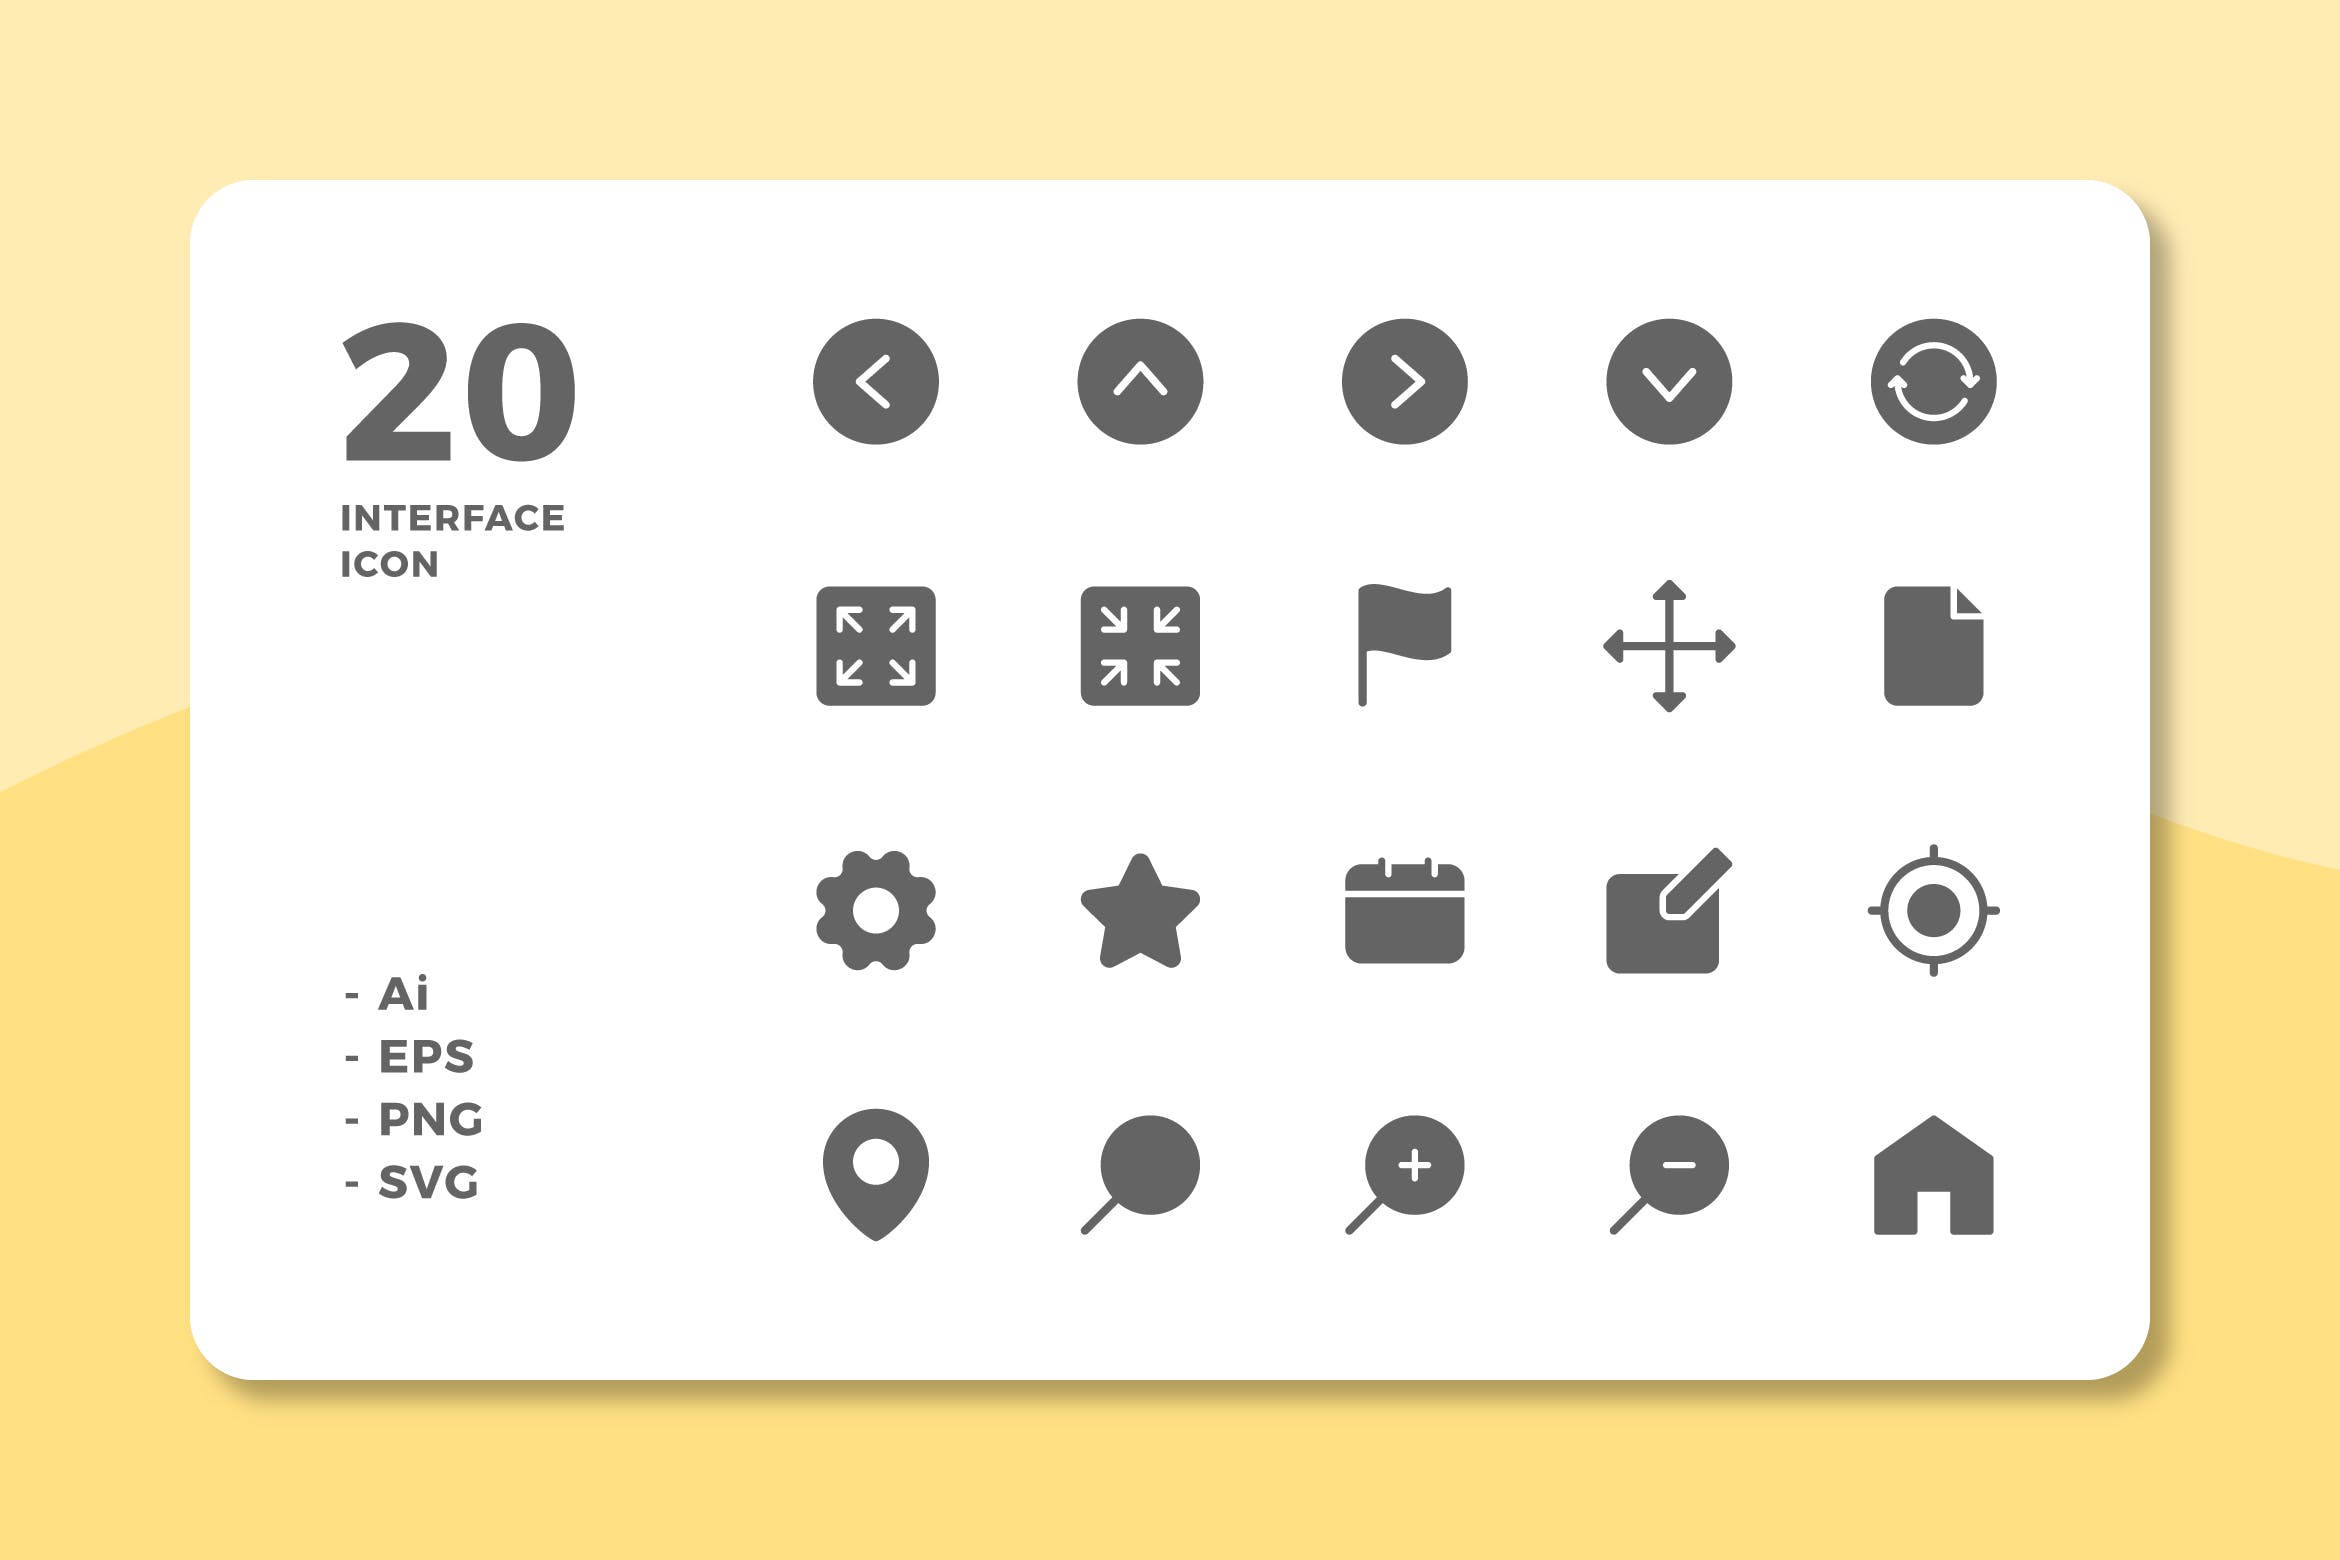 20枚UI界面设计APP操作选项蚂蚁素材精选图标v1 20 Interface Icons Vol.1 (Solid)插图